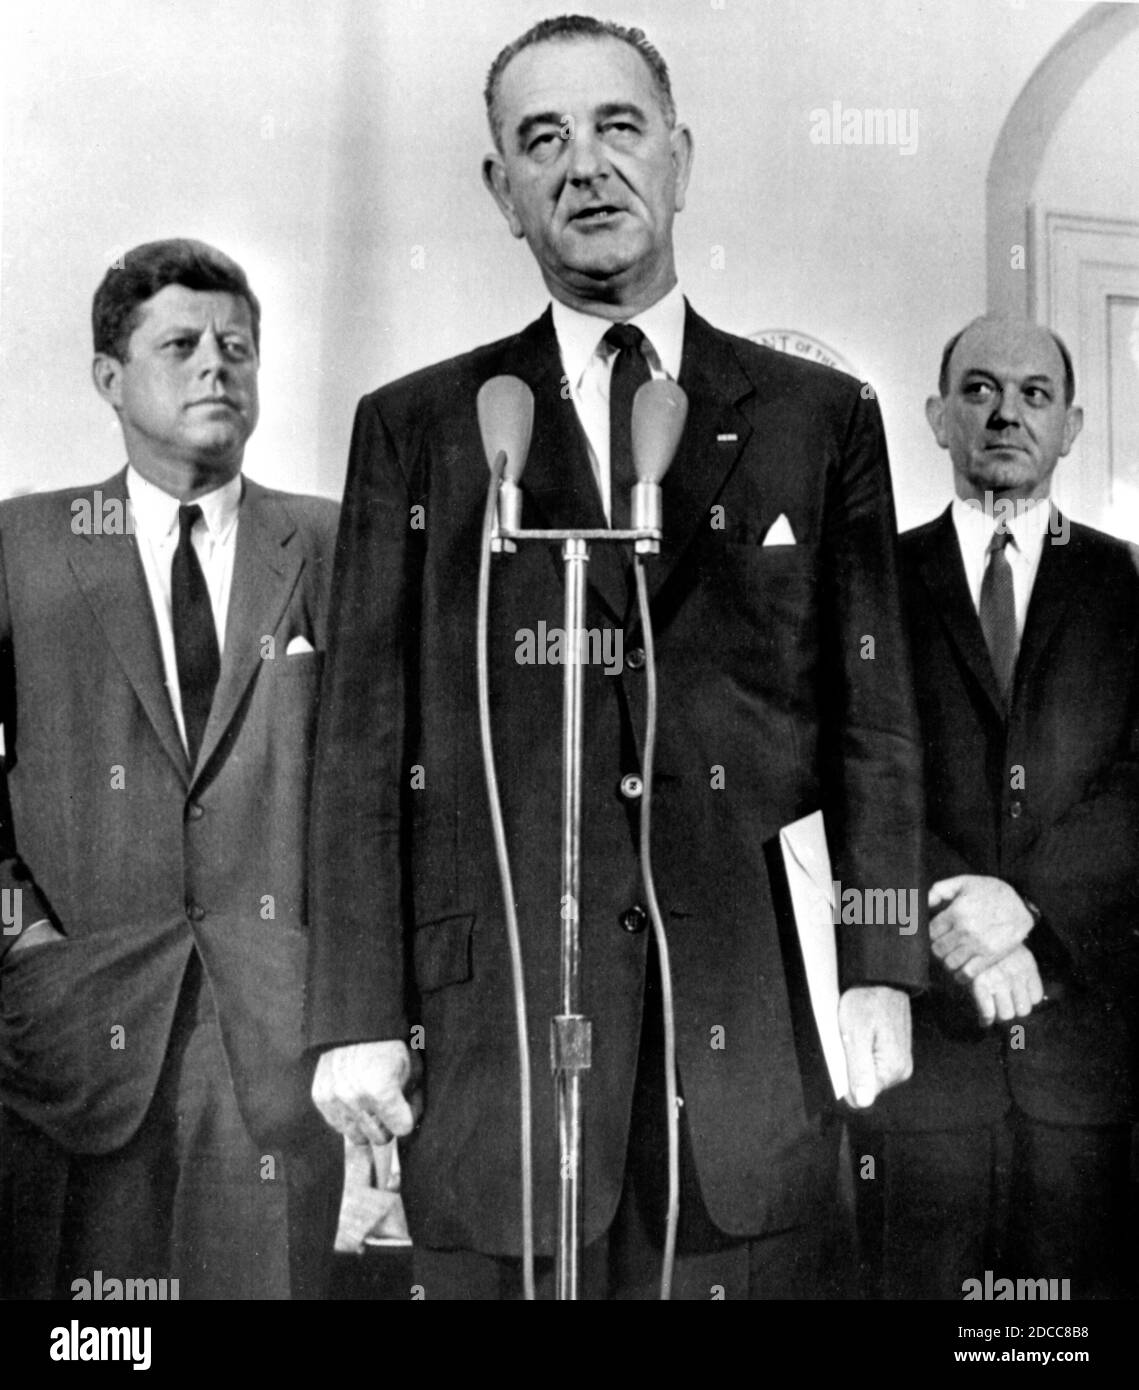 Flanqué du président américain John F Kennedy et du secrétaire d’État Dean Rusk, le vice-président américain Lyndon B Johnson rend compte à la presse de sa visite d’un week-end à Berlin en août 1961, au plus fort de la crise de Berlin et de la création du mur de Berlin. Banque D'Images